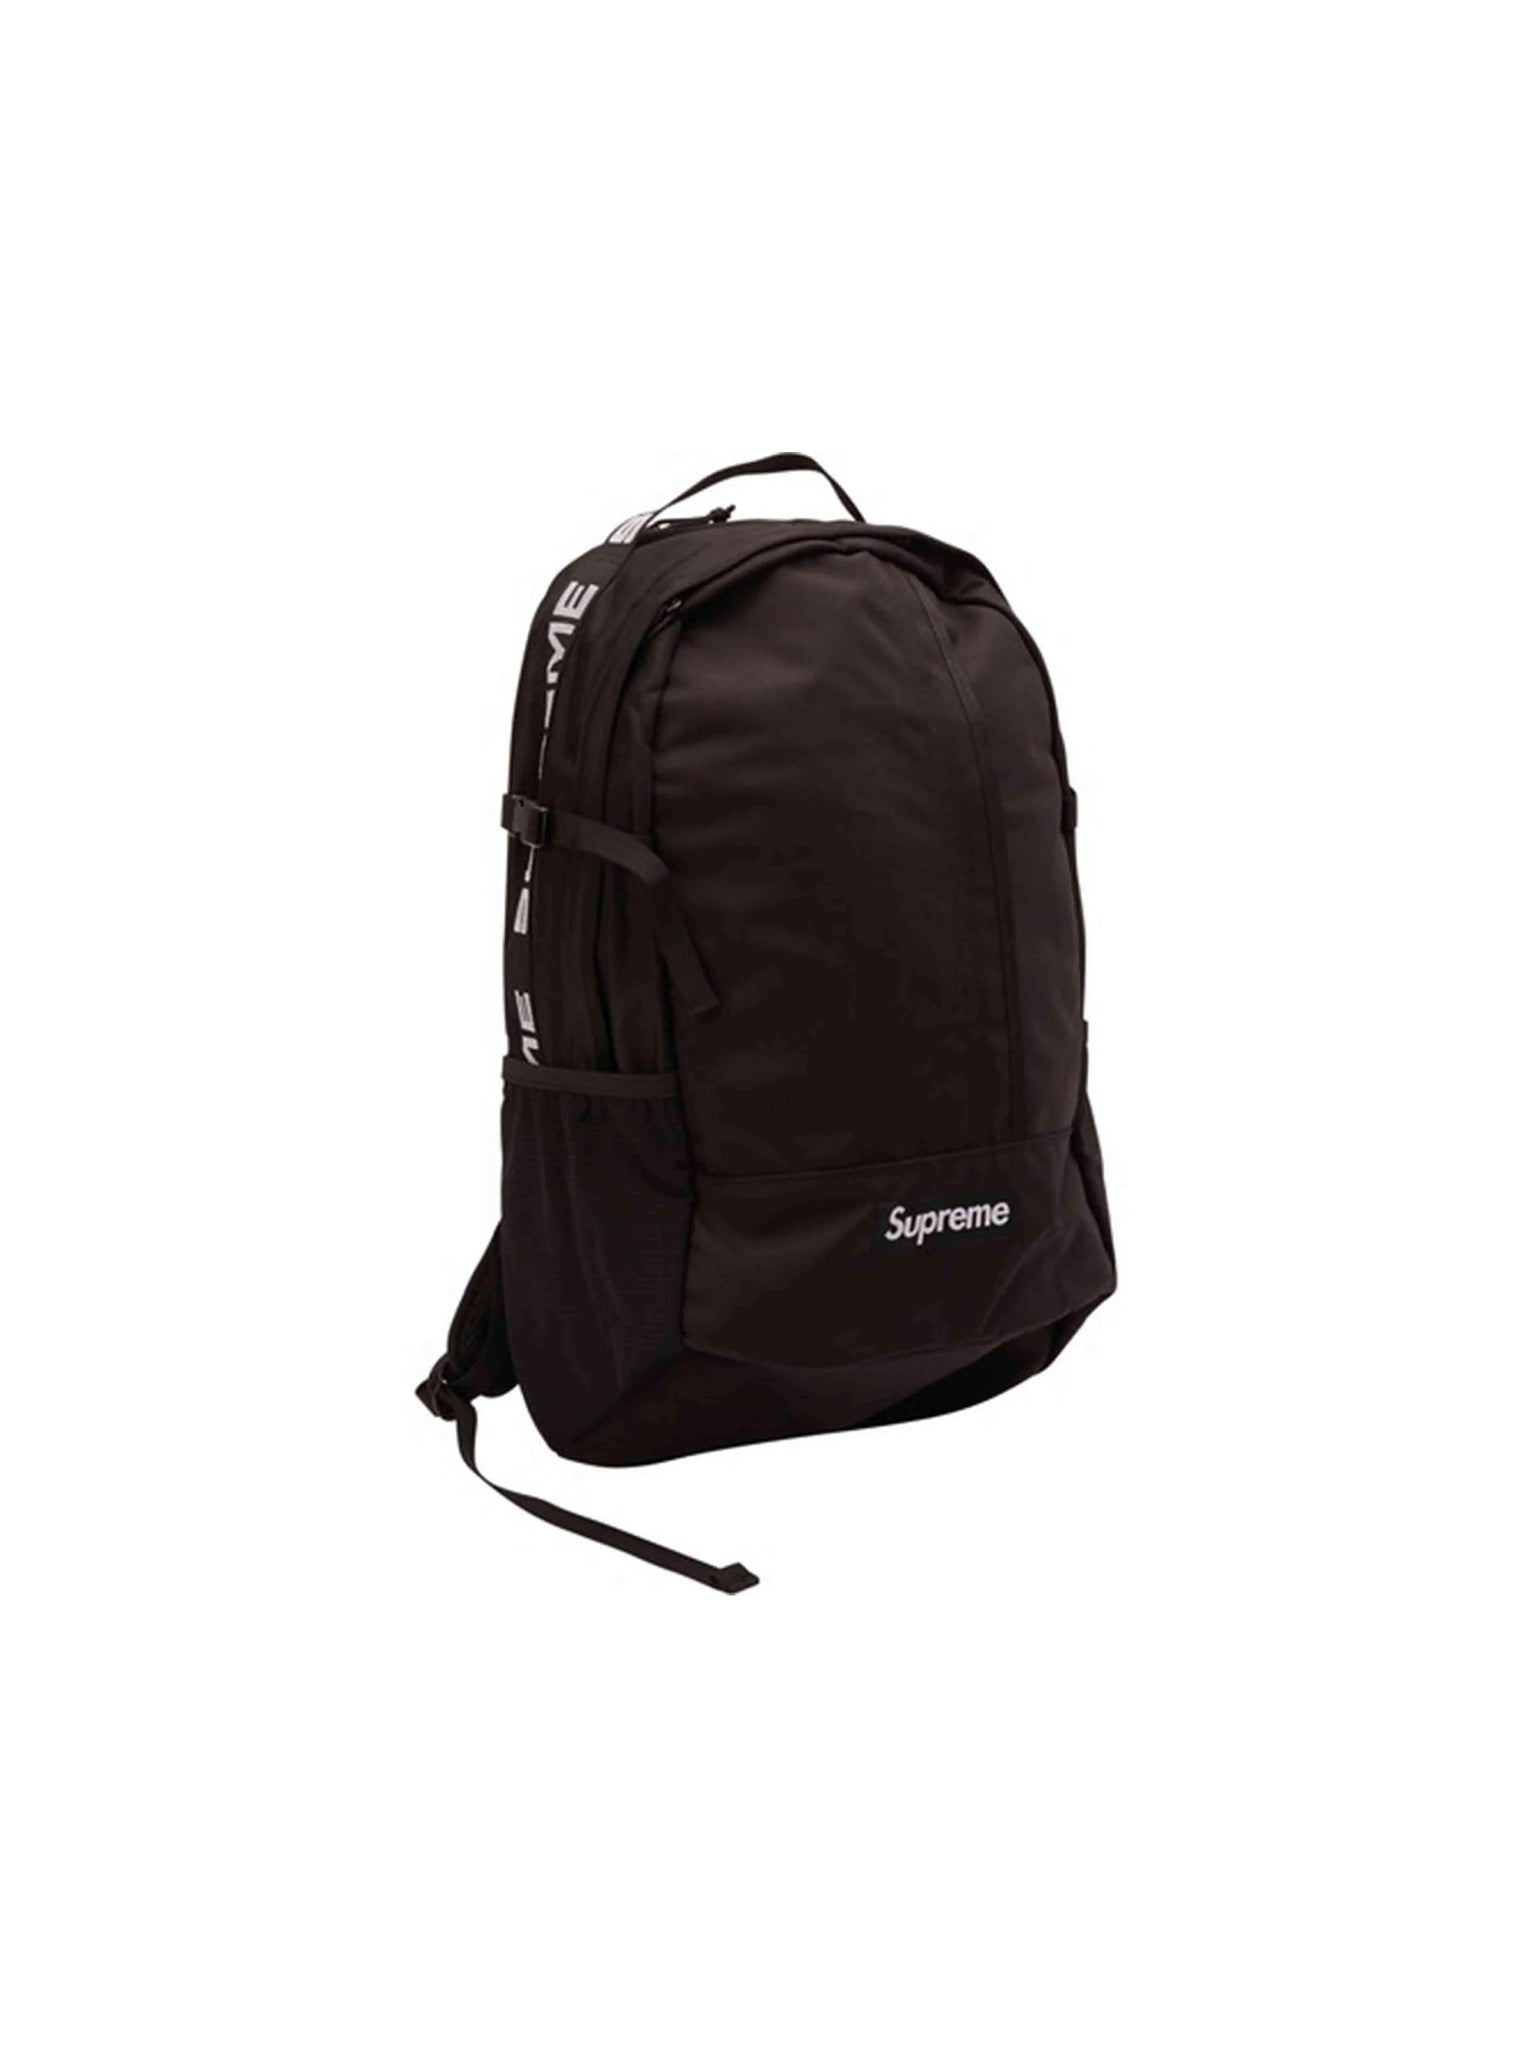 Supreme Backpack Black [SS18] Supreme